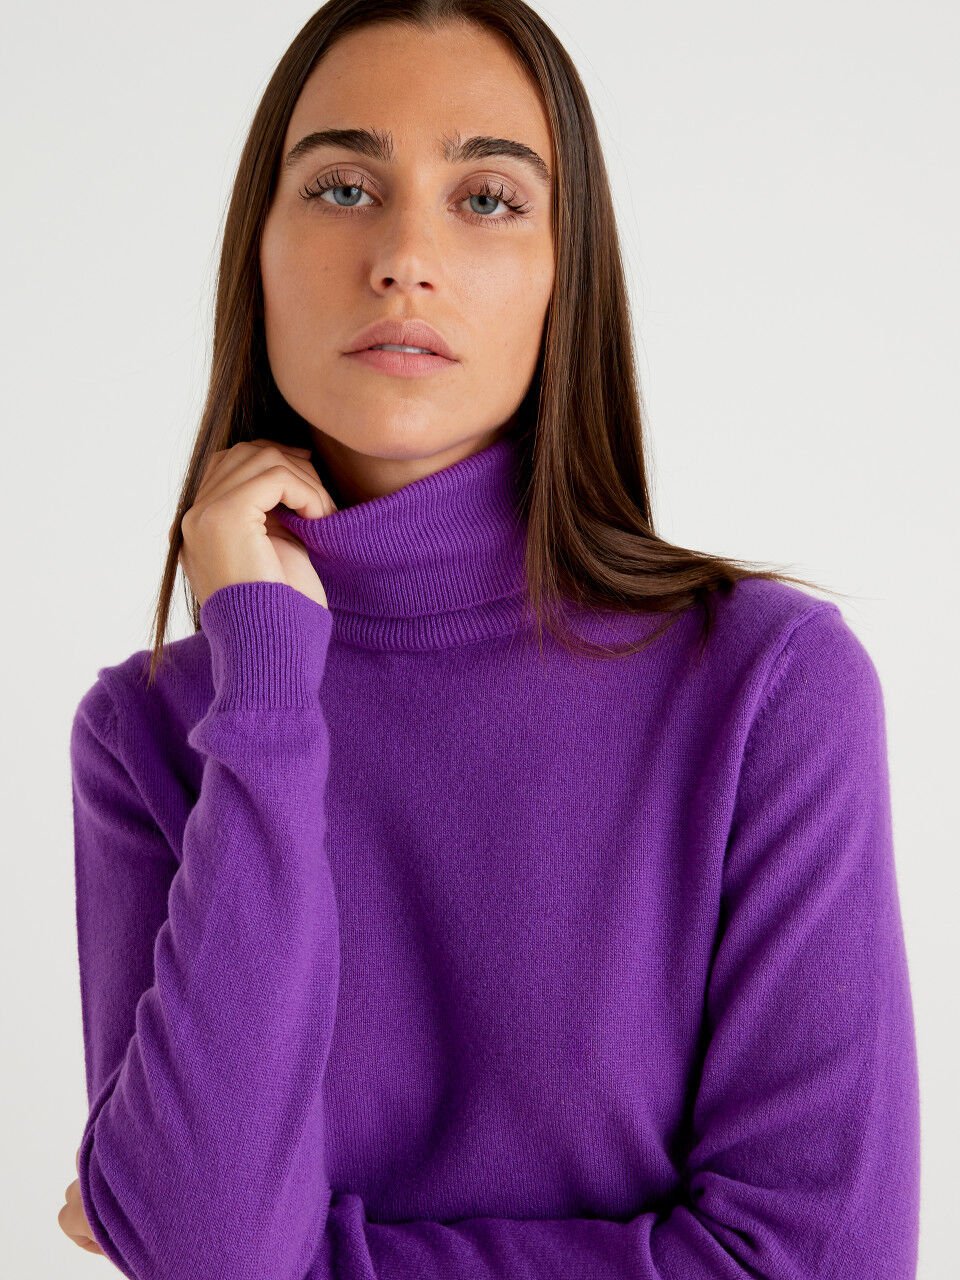 Jersey de cuello alto morado de pura lana merina personalizable